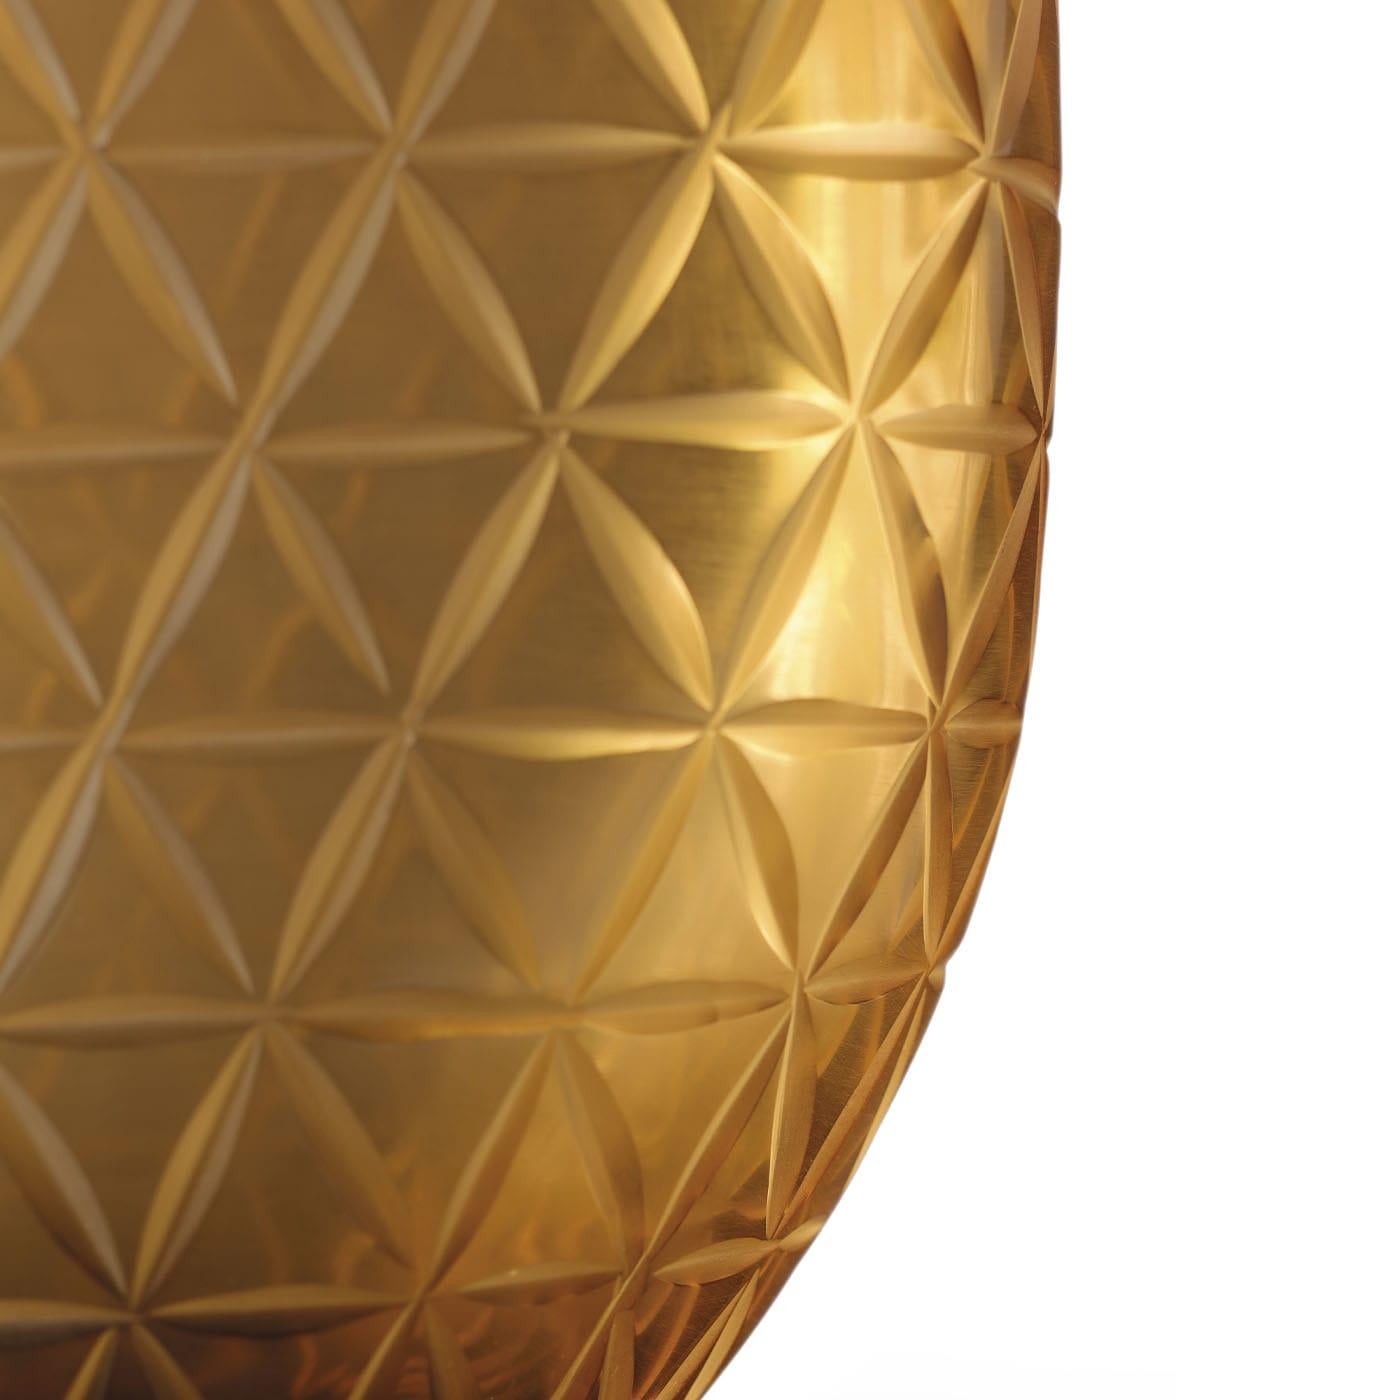 Ein minutiös von Hand geätztes sechseckiges Muster zeichnet diese prächtige und einzigartige Vase aus mundgeblasenem Murano-Glas aus. In einem warmen Bronzeton gehalten, der sich zum Sockel hin allmählich intensiviert, zeichnet sich das Stück durch